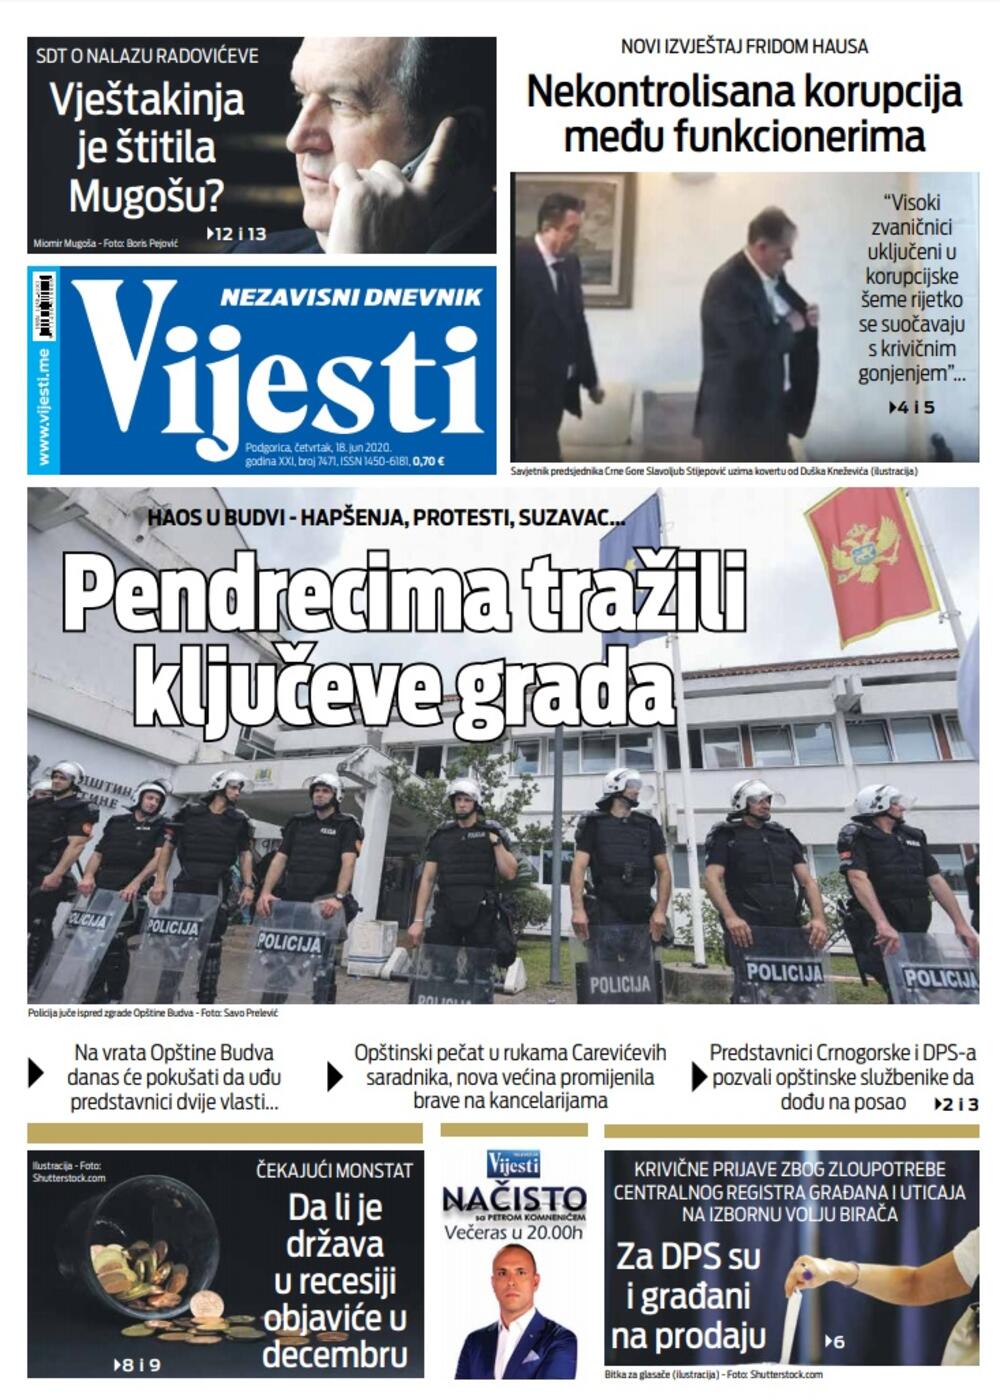 Naslovna strana "Vijesti" za 18. jun 2020., Foto: Vijesti